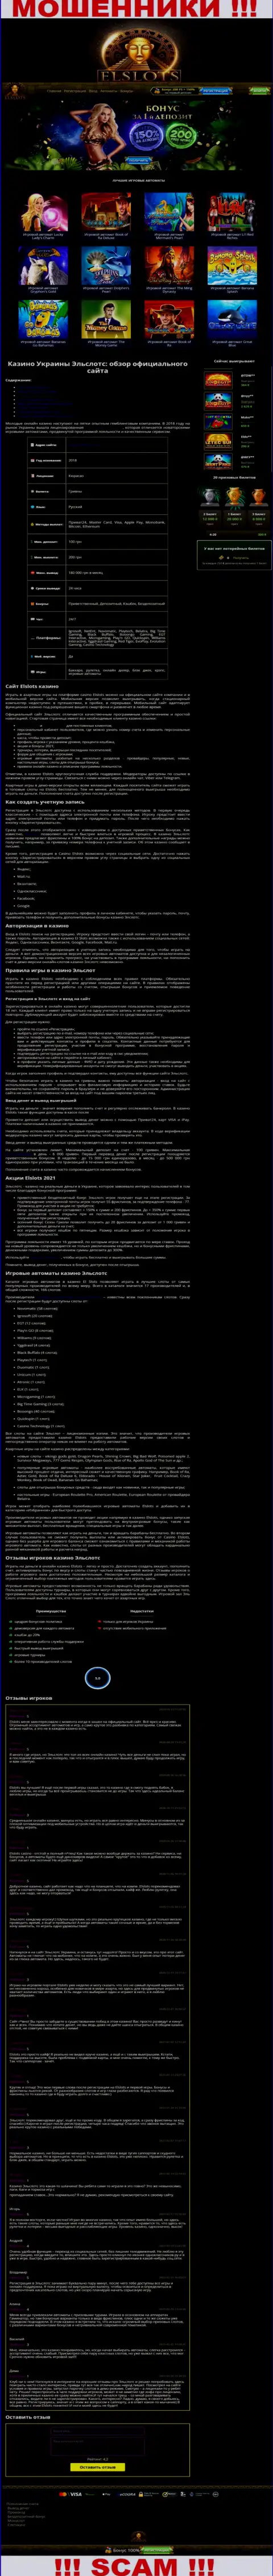 Внешний вид официальной web страницы незаконно действующей организации ЕлСлотс Ком